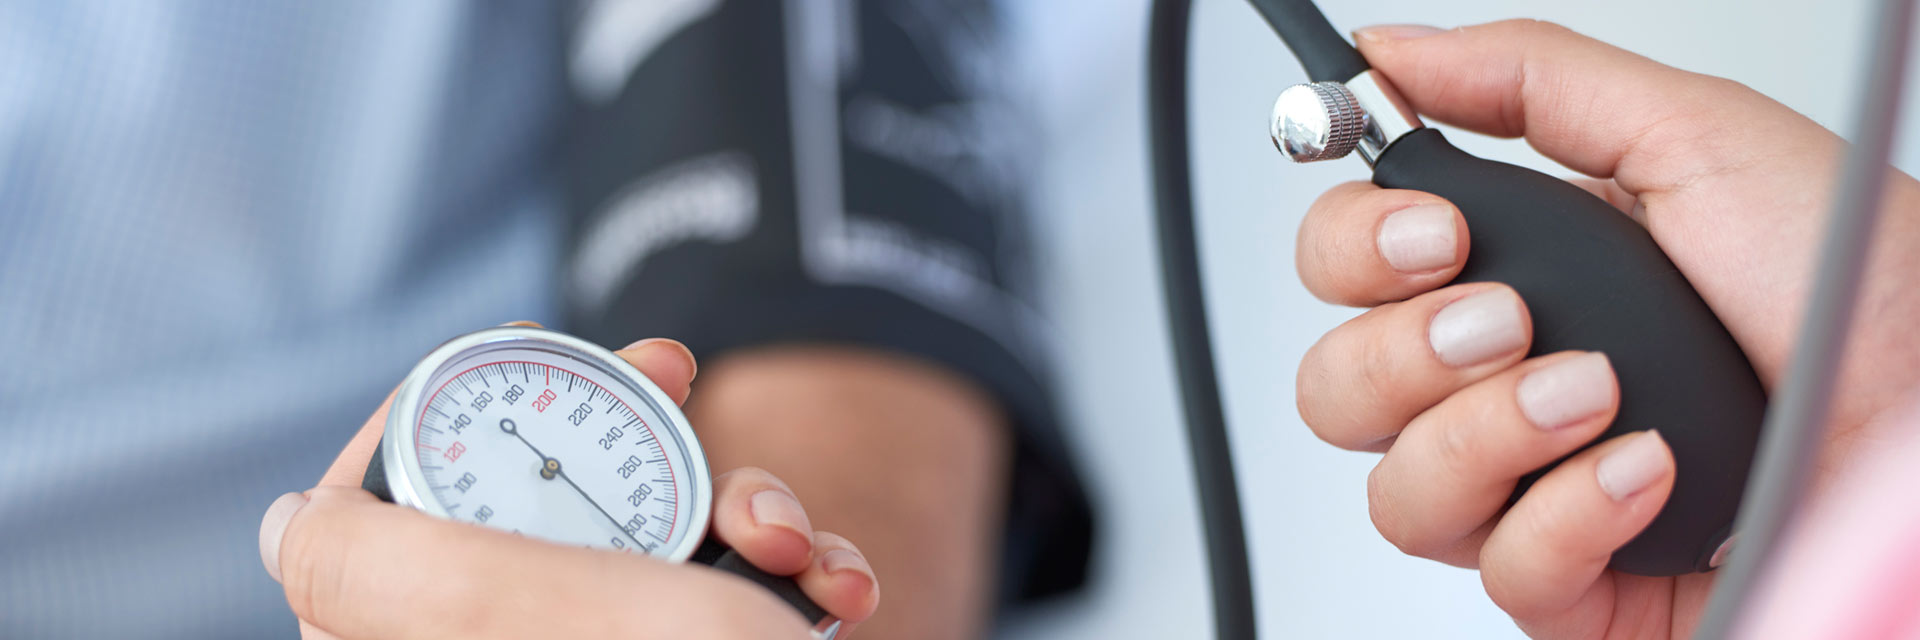 Uno de los factores a tener en cuenta en el cuidado de la salud de nuestro corazón es la presión arterial.